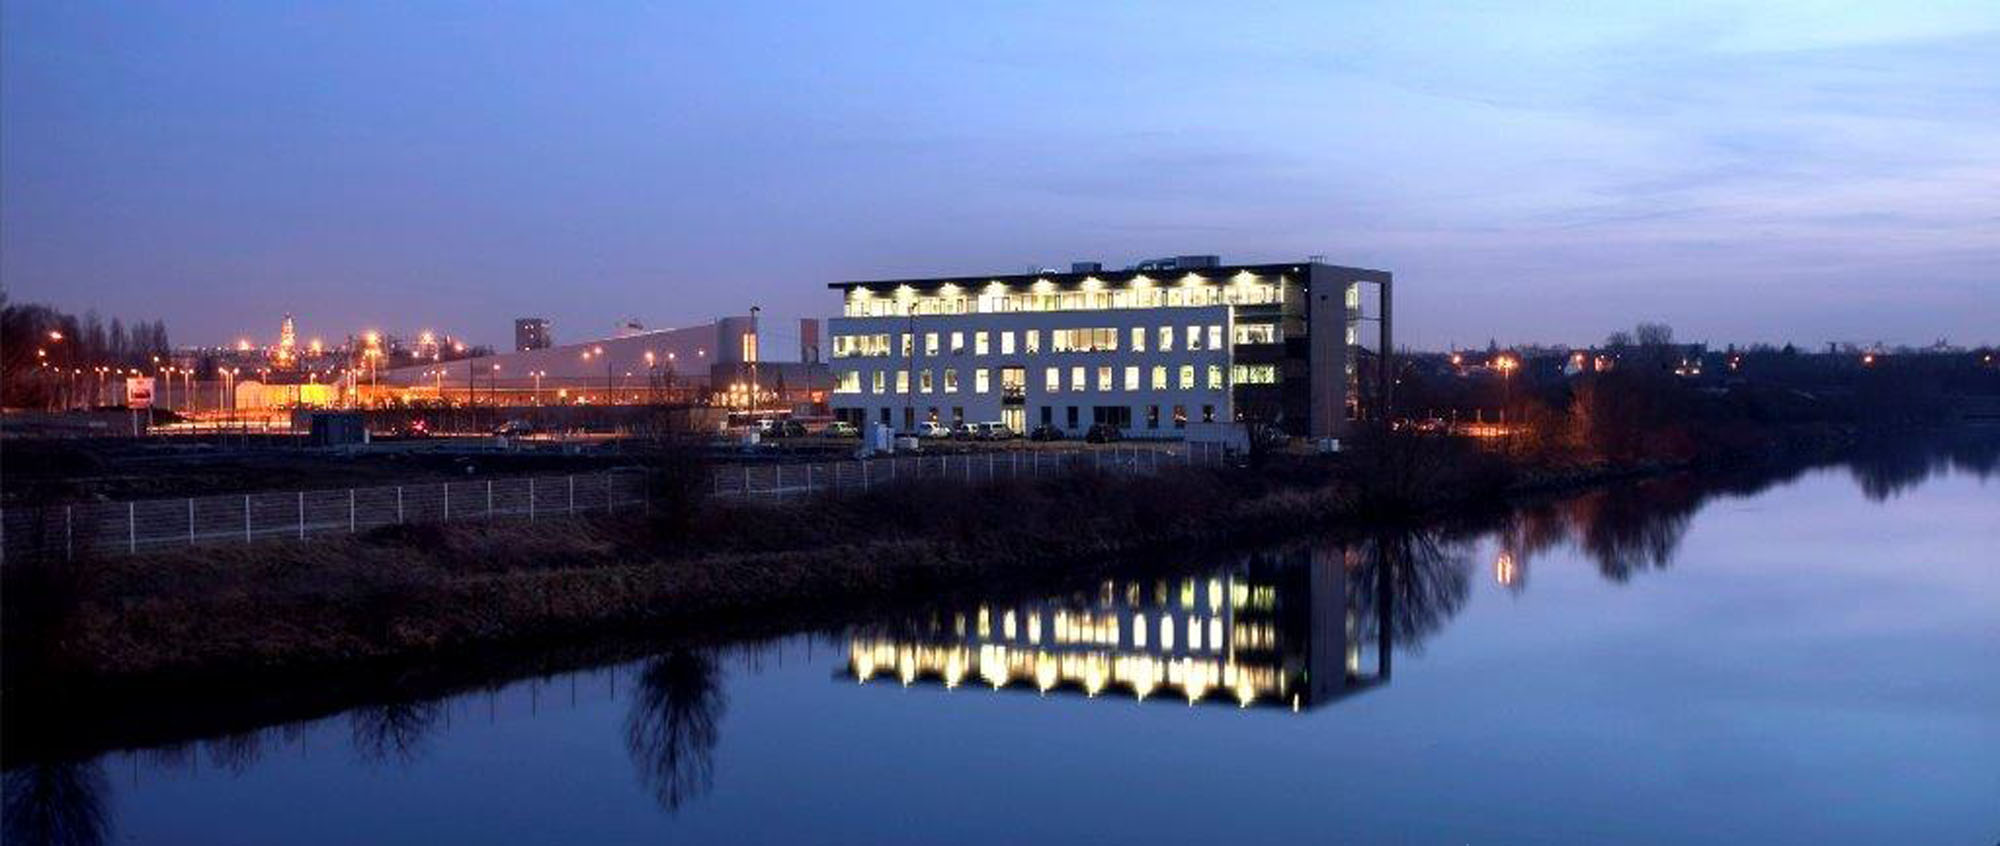 Aménagement du parc tertiaire Riveo à Marquette Lez Lille en bords de Deule bâtiments bureaux vue de nuit